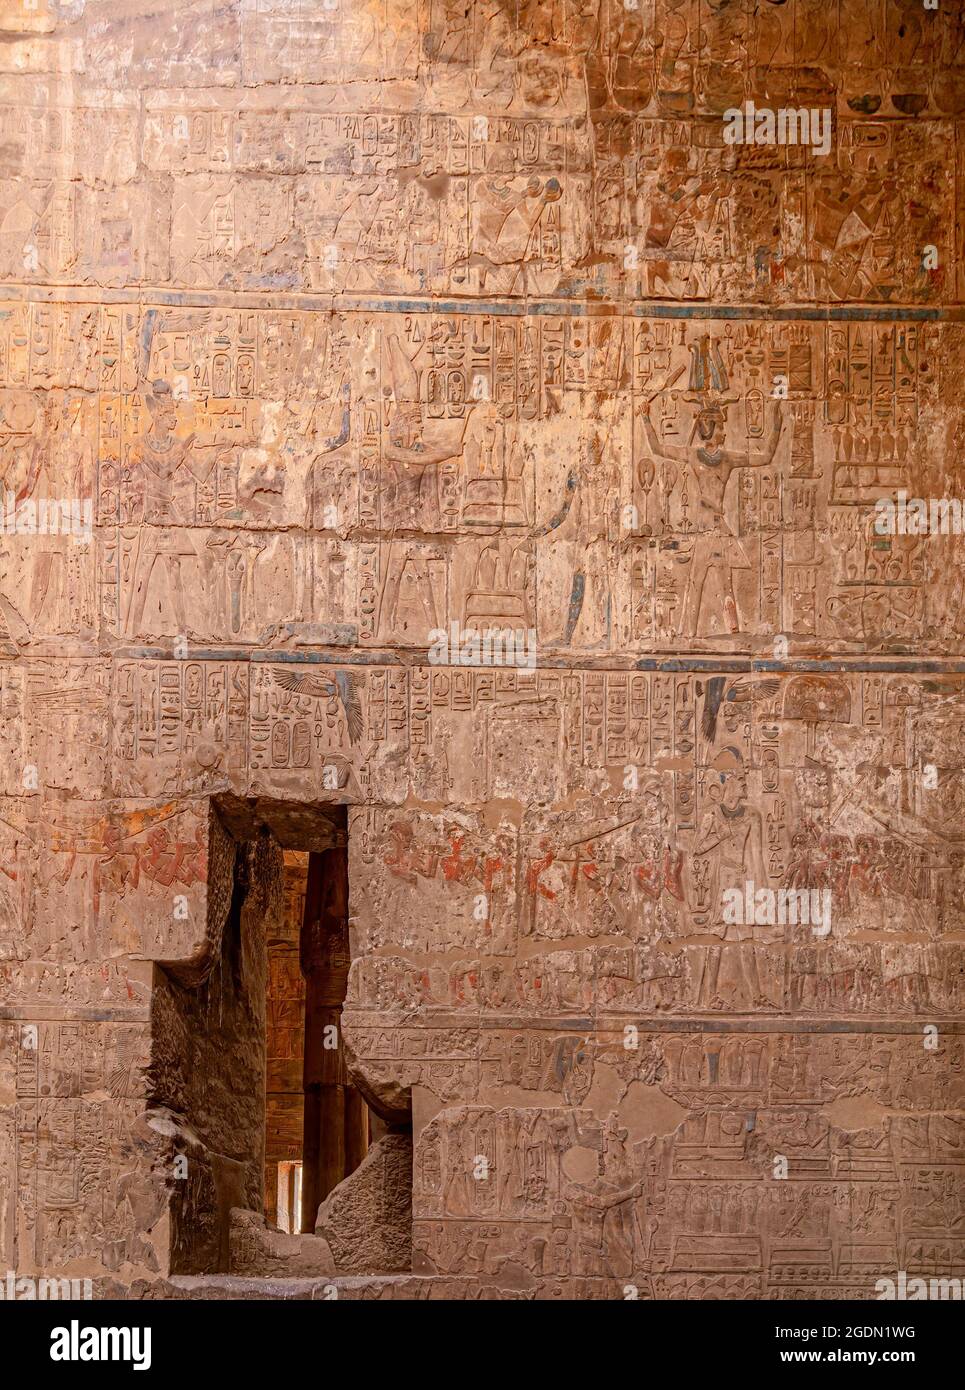 Hiéroglyphes polychromatiques dans les ruines du Temple de Louxor, complexe de temples égyptiens situé dans la ville de Louxor, les Thébes antiques. Banque D'Images